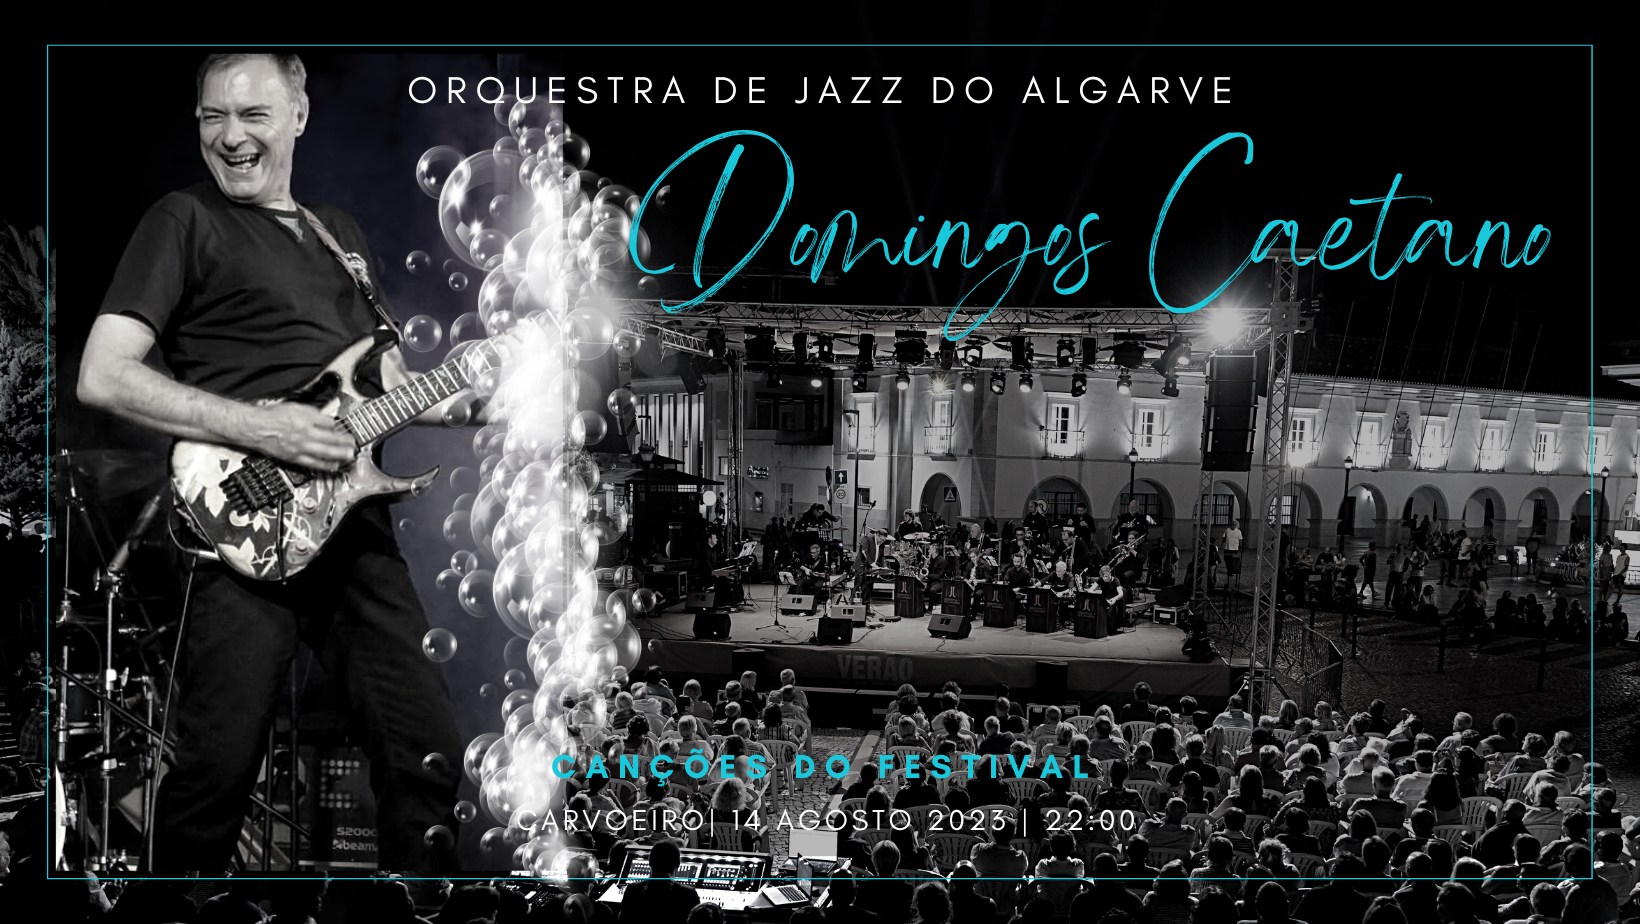 Domingos Caetano  | Orquestra de Jazz do Algarve | Canções do Festival | Carvoeiro